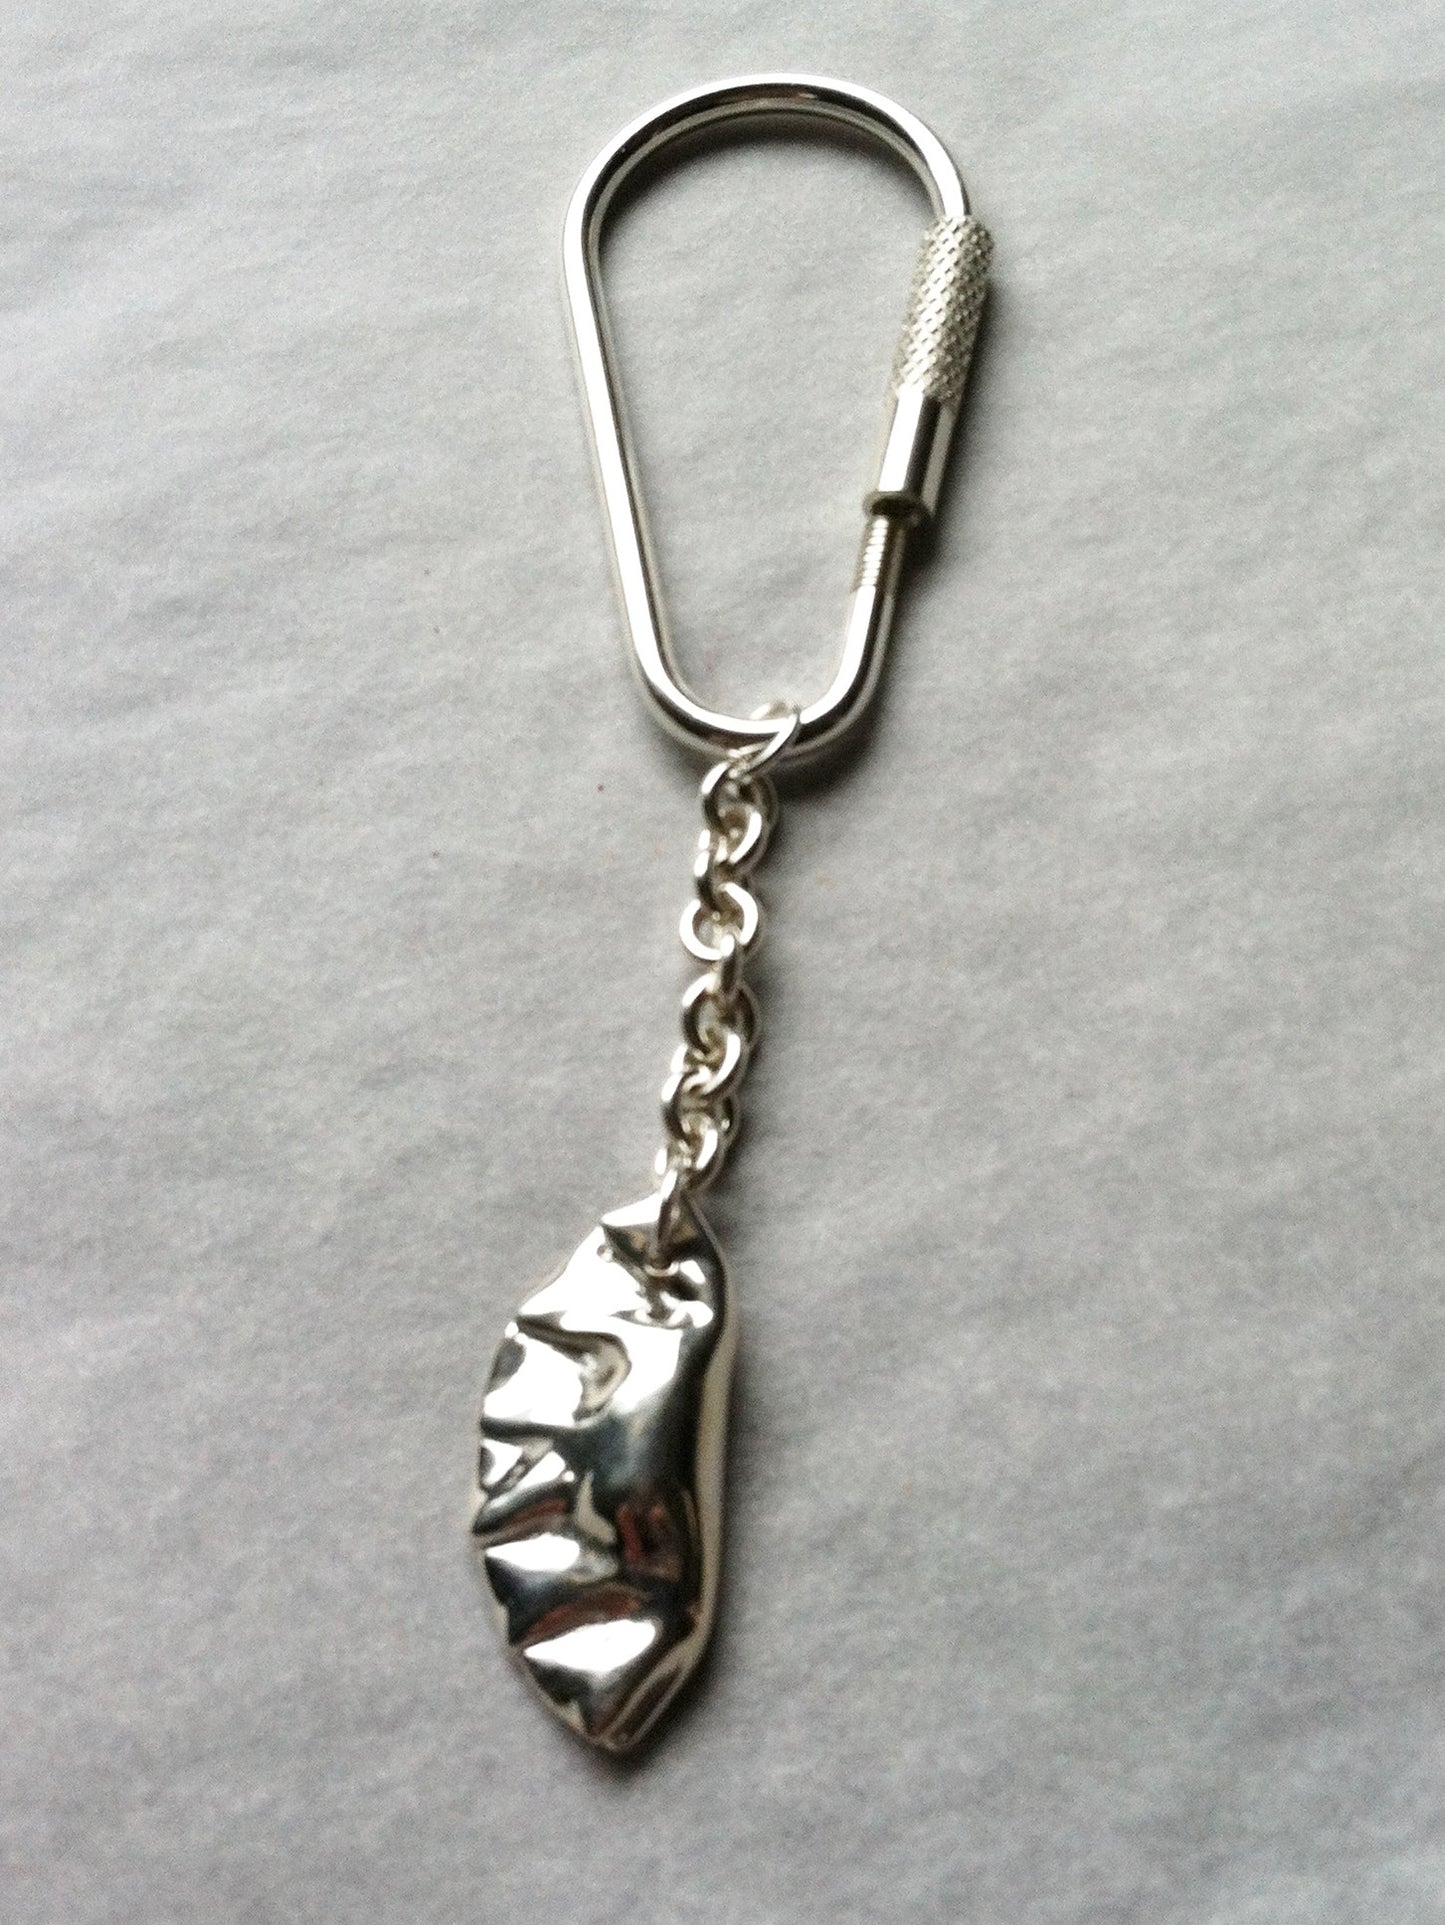 Potsticker Dumpling Charm Key Chain in Sterling Silver